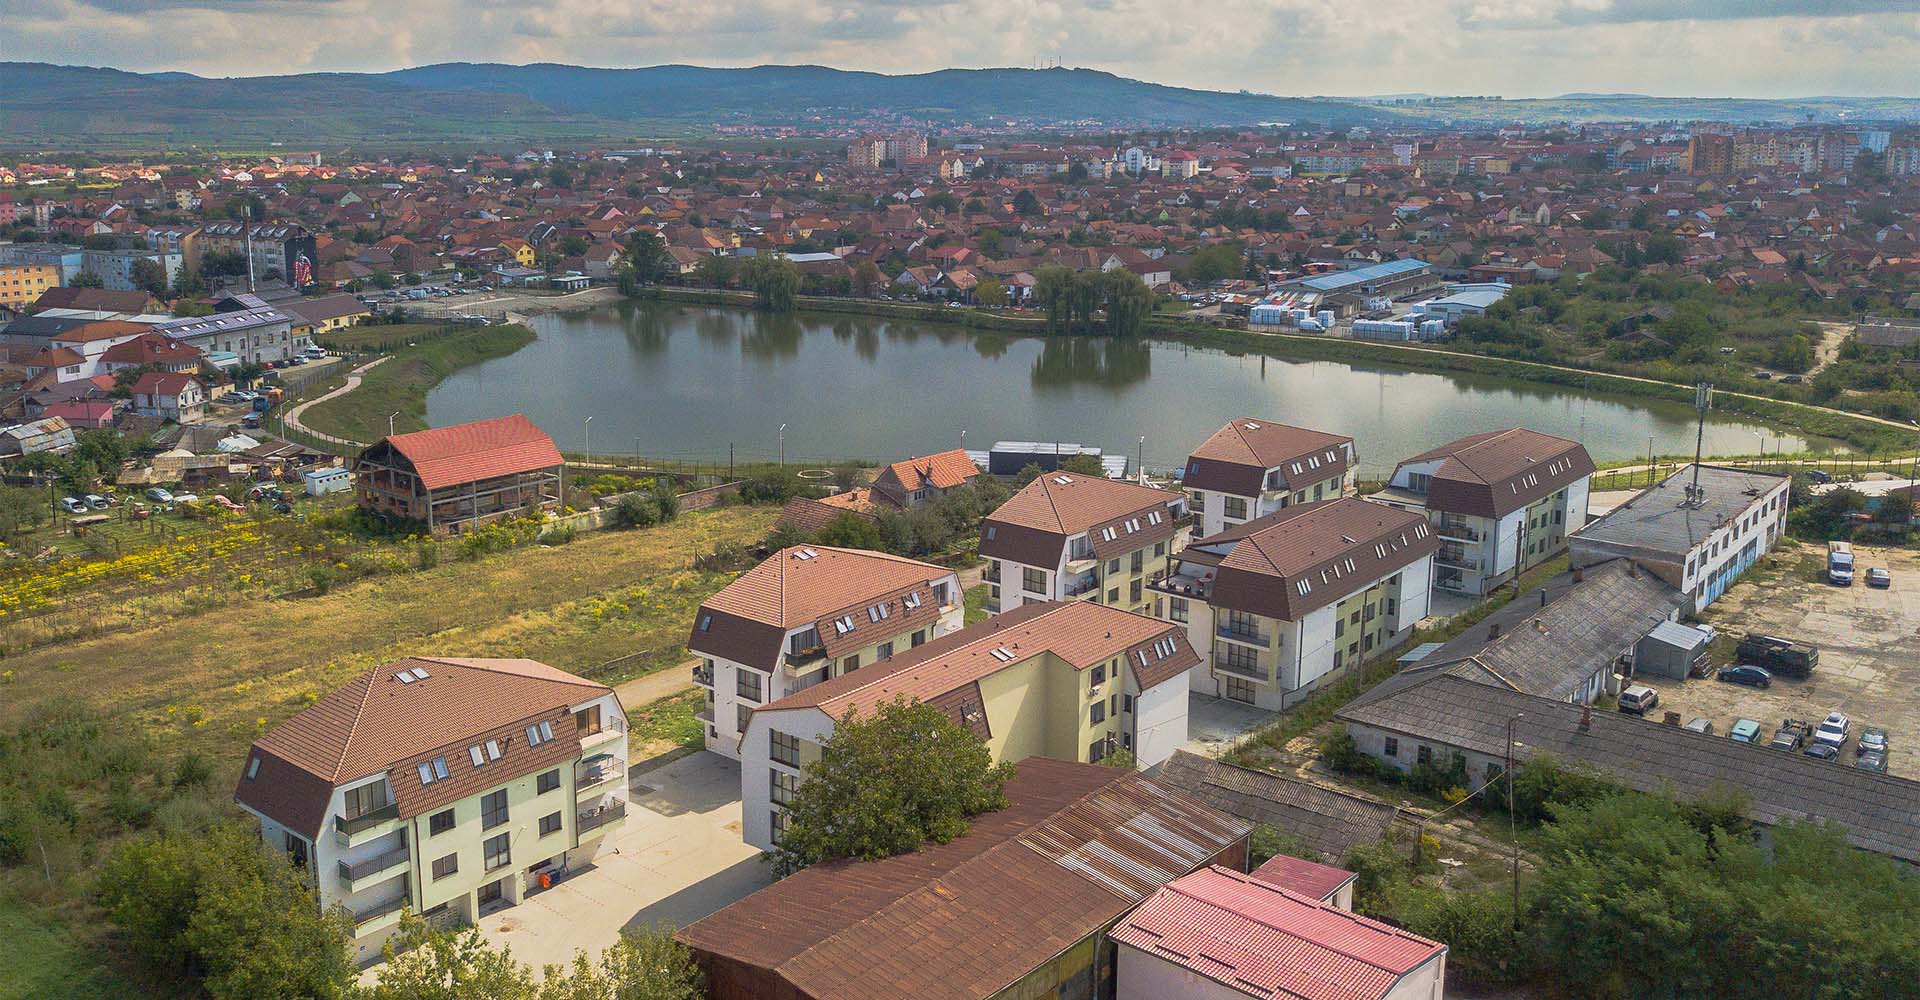 Lake Residence, Sibiu (72 apartamente)